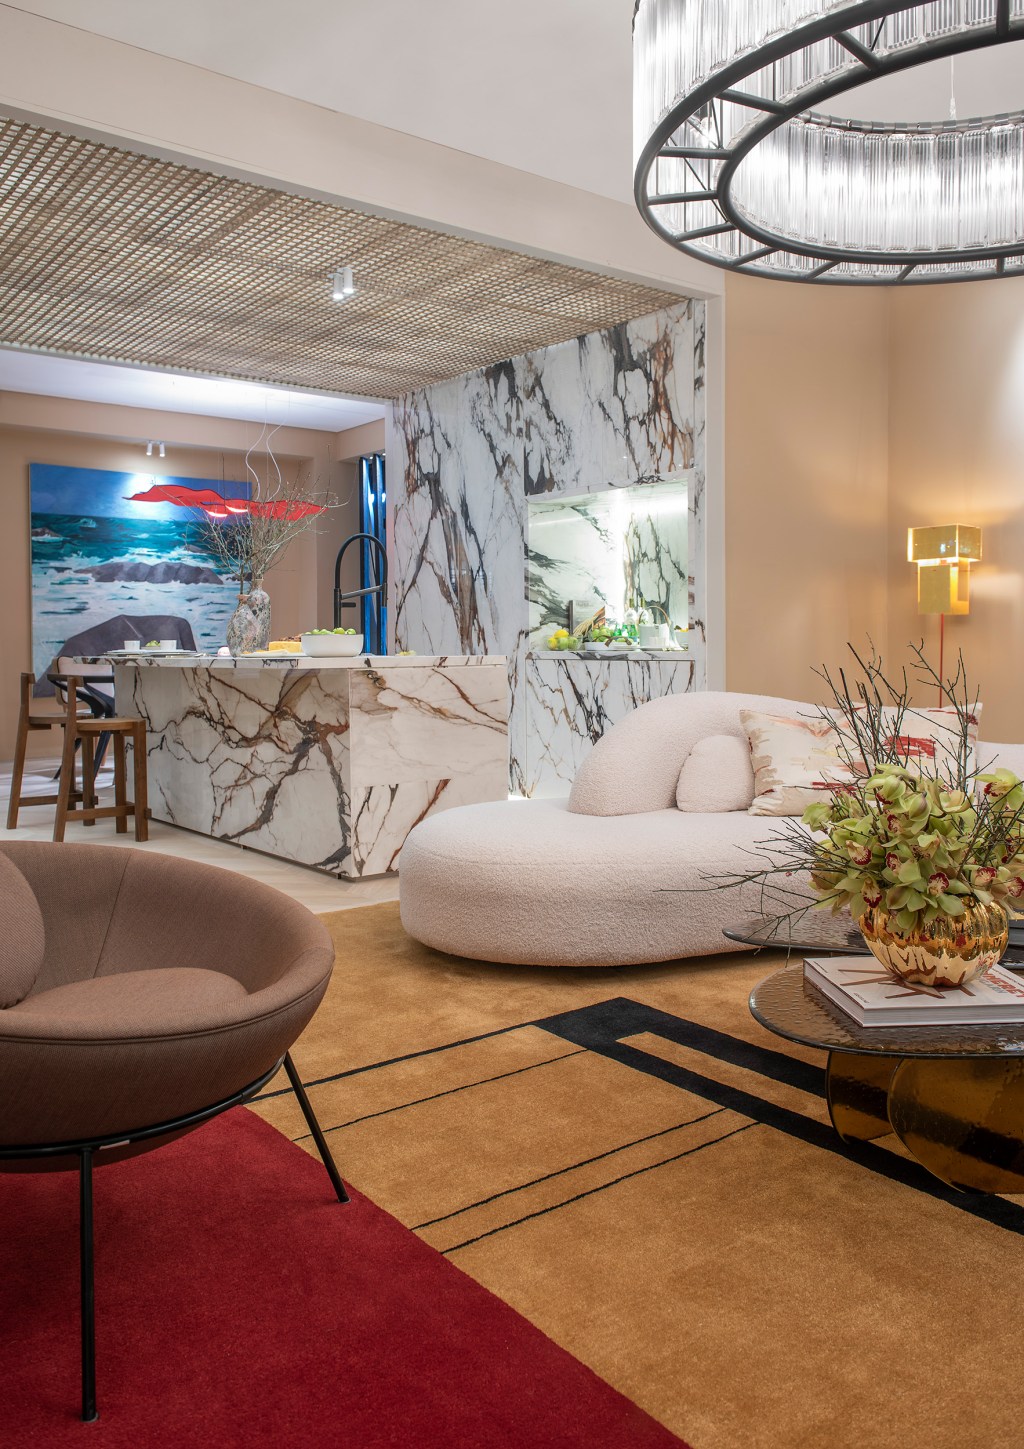 murilo lomas arquitetura living art casacor sp 2022 decoracao design mostras sala lustre tapete estar sofa bancada